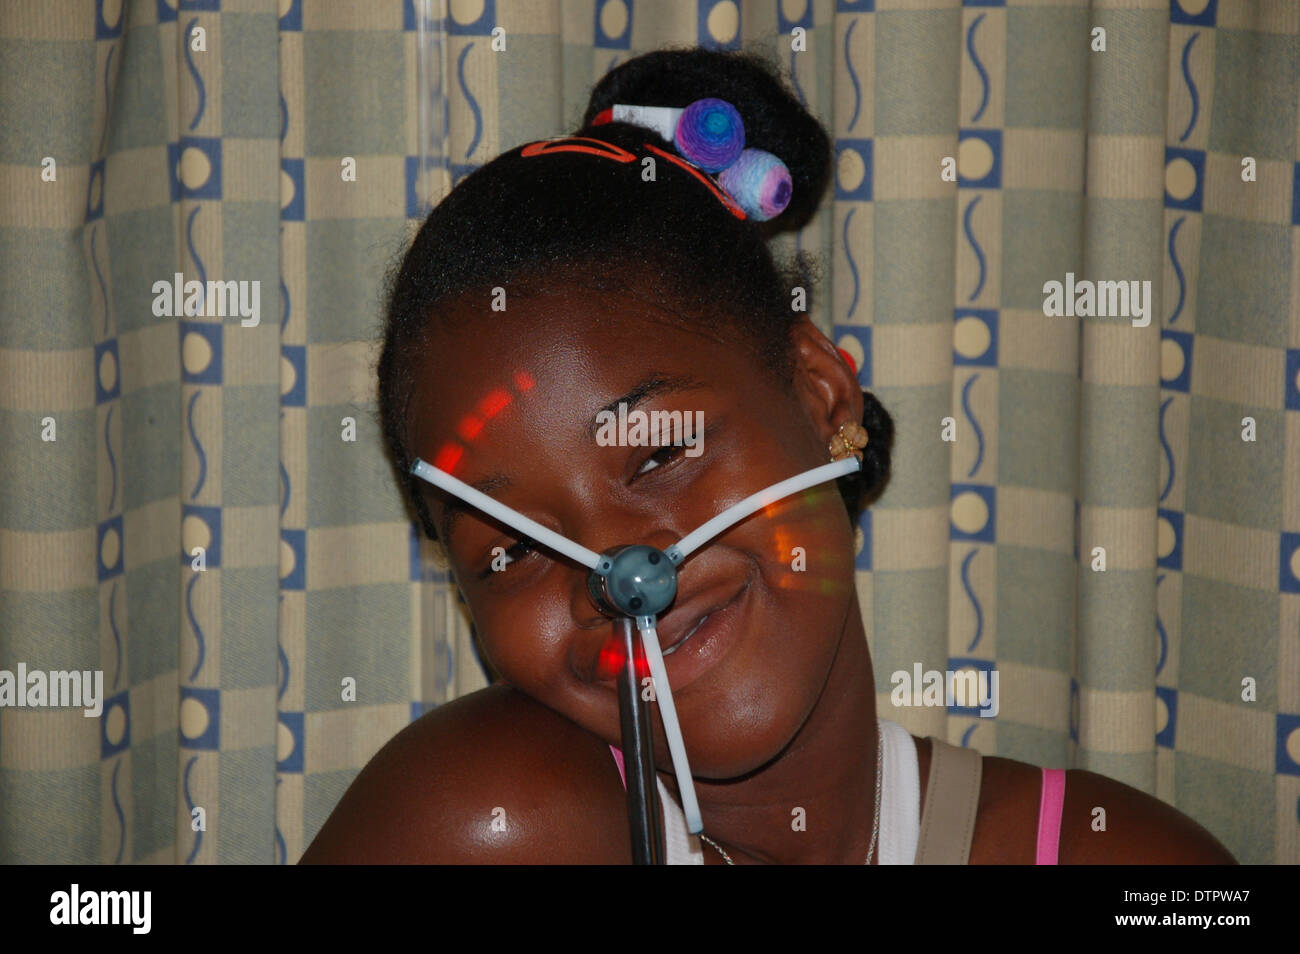 Portrait d'un pretty smiling Afro girl with a toy allumé de couleur en rotation Banque D'Images